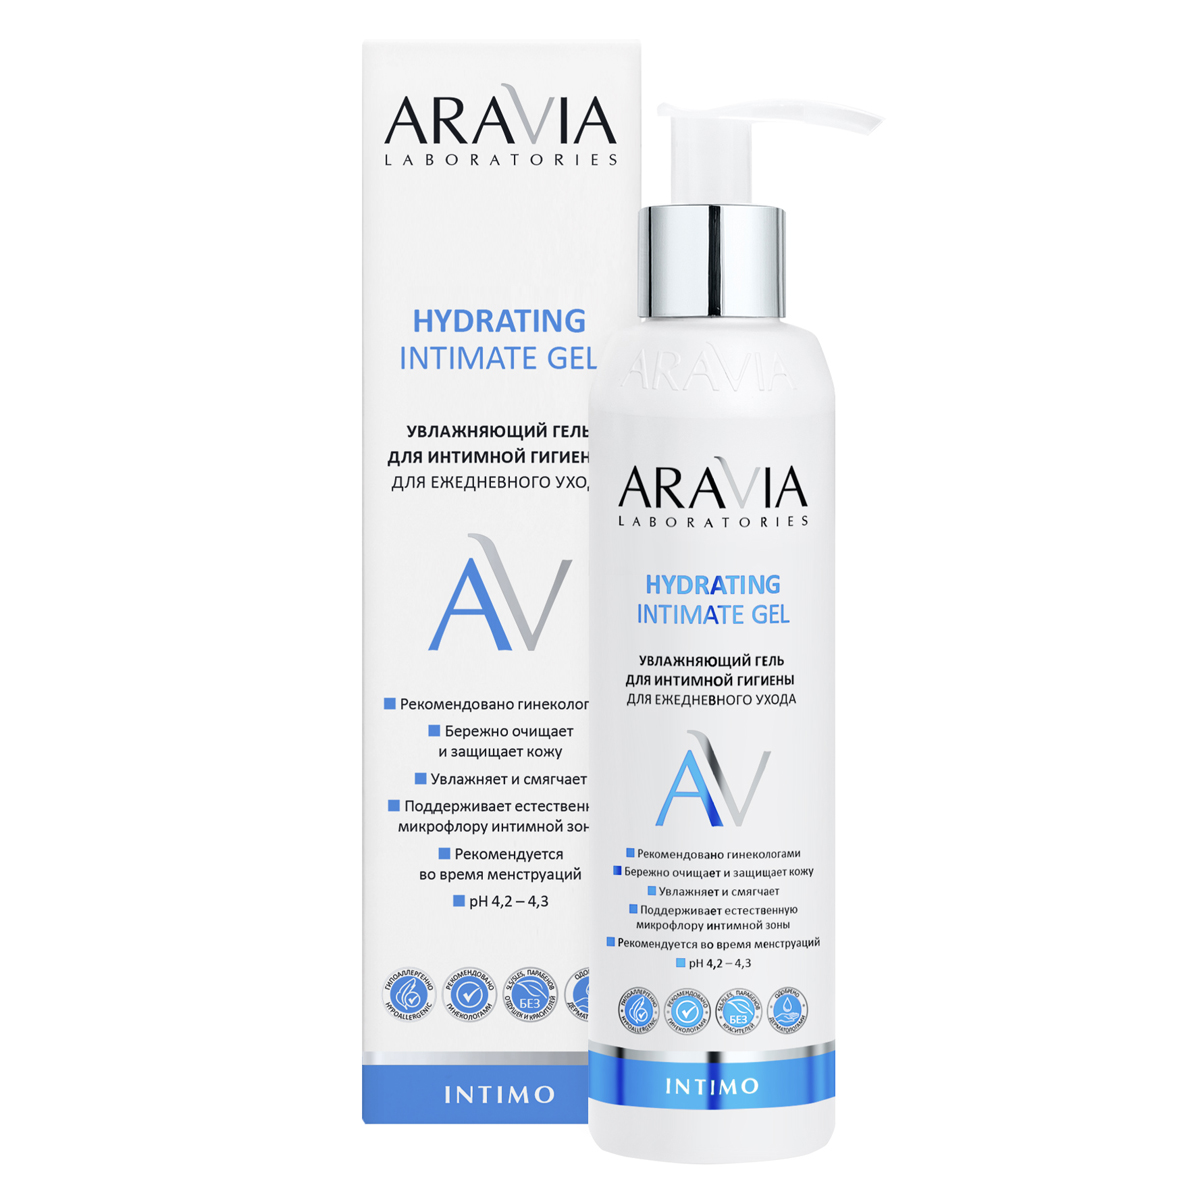 Aravia Laboratories Увлажняющий гель для интимной гигиены для ежедневного ухода Hydrating Intimate Gel, 200 мл (Aravia Laboratories, Уход за телом)